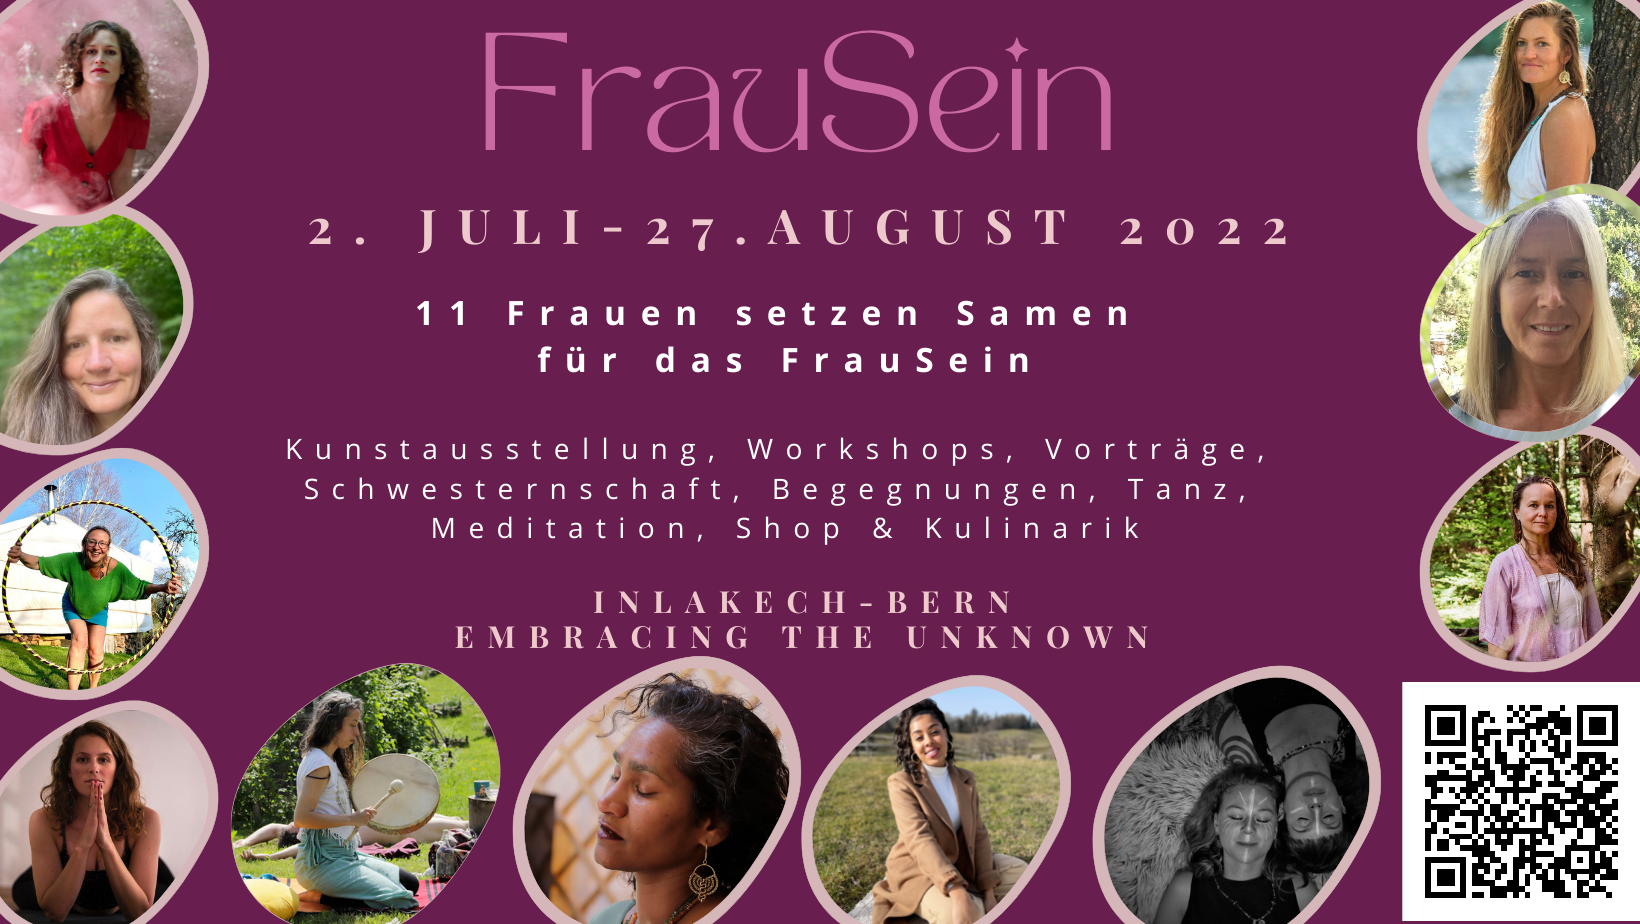 FrauSein - SelfLove (Facebook-Titelbilder) (32)